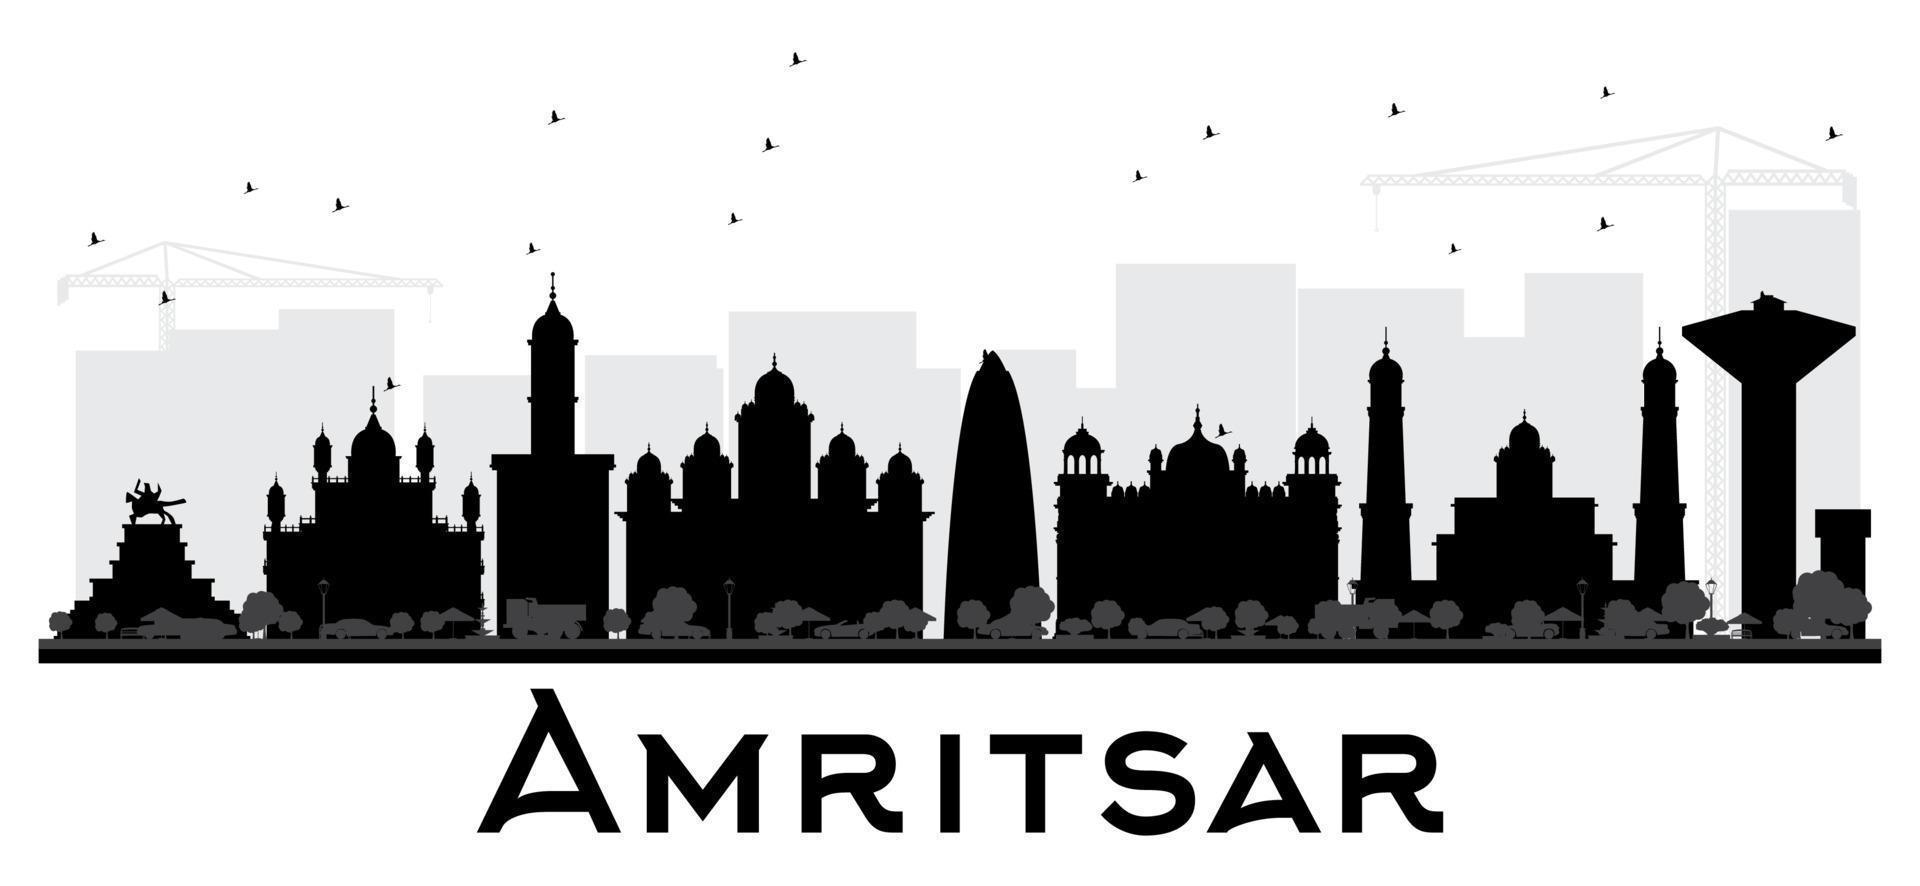 silueta en blanco y negro del horizonte de la ciudad de amritsar. vector